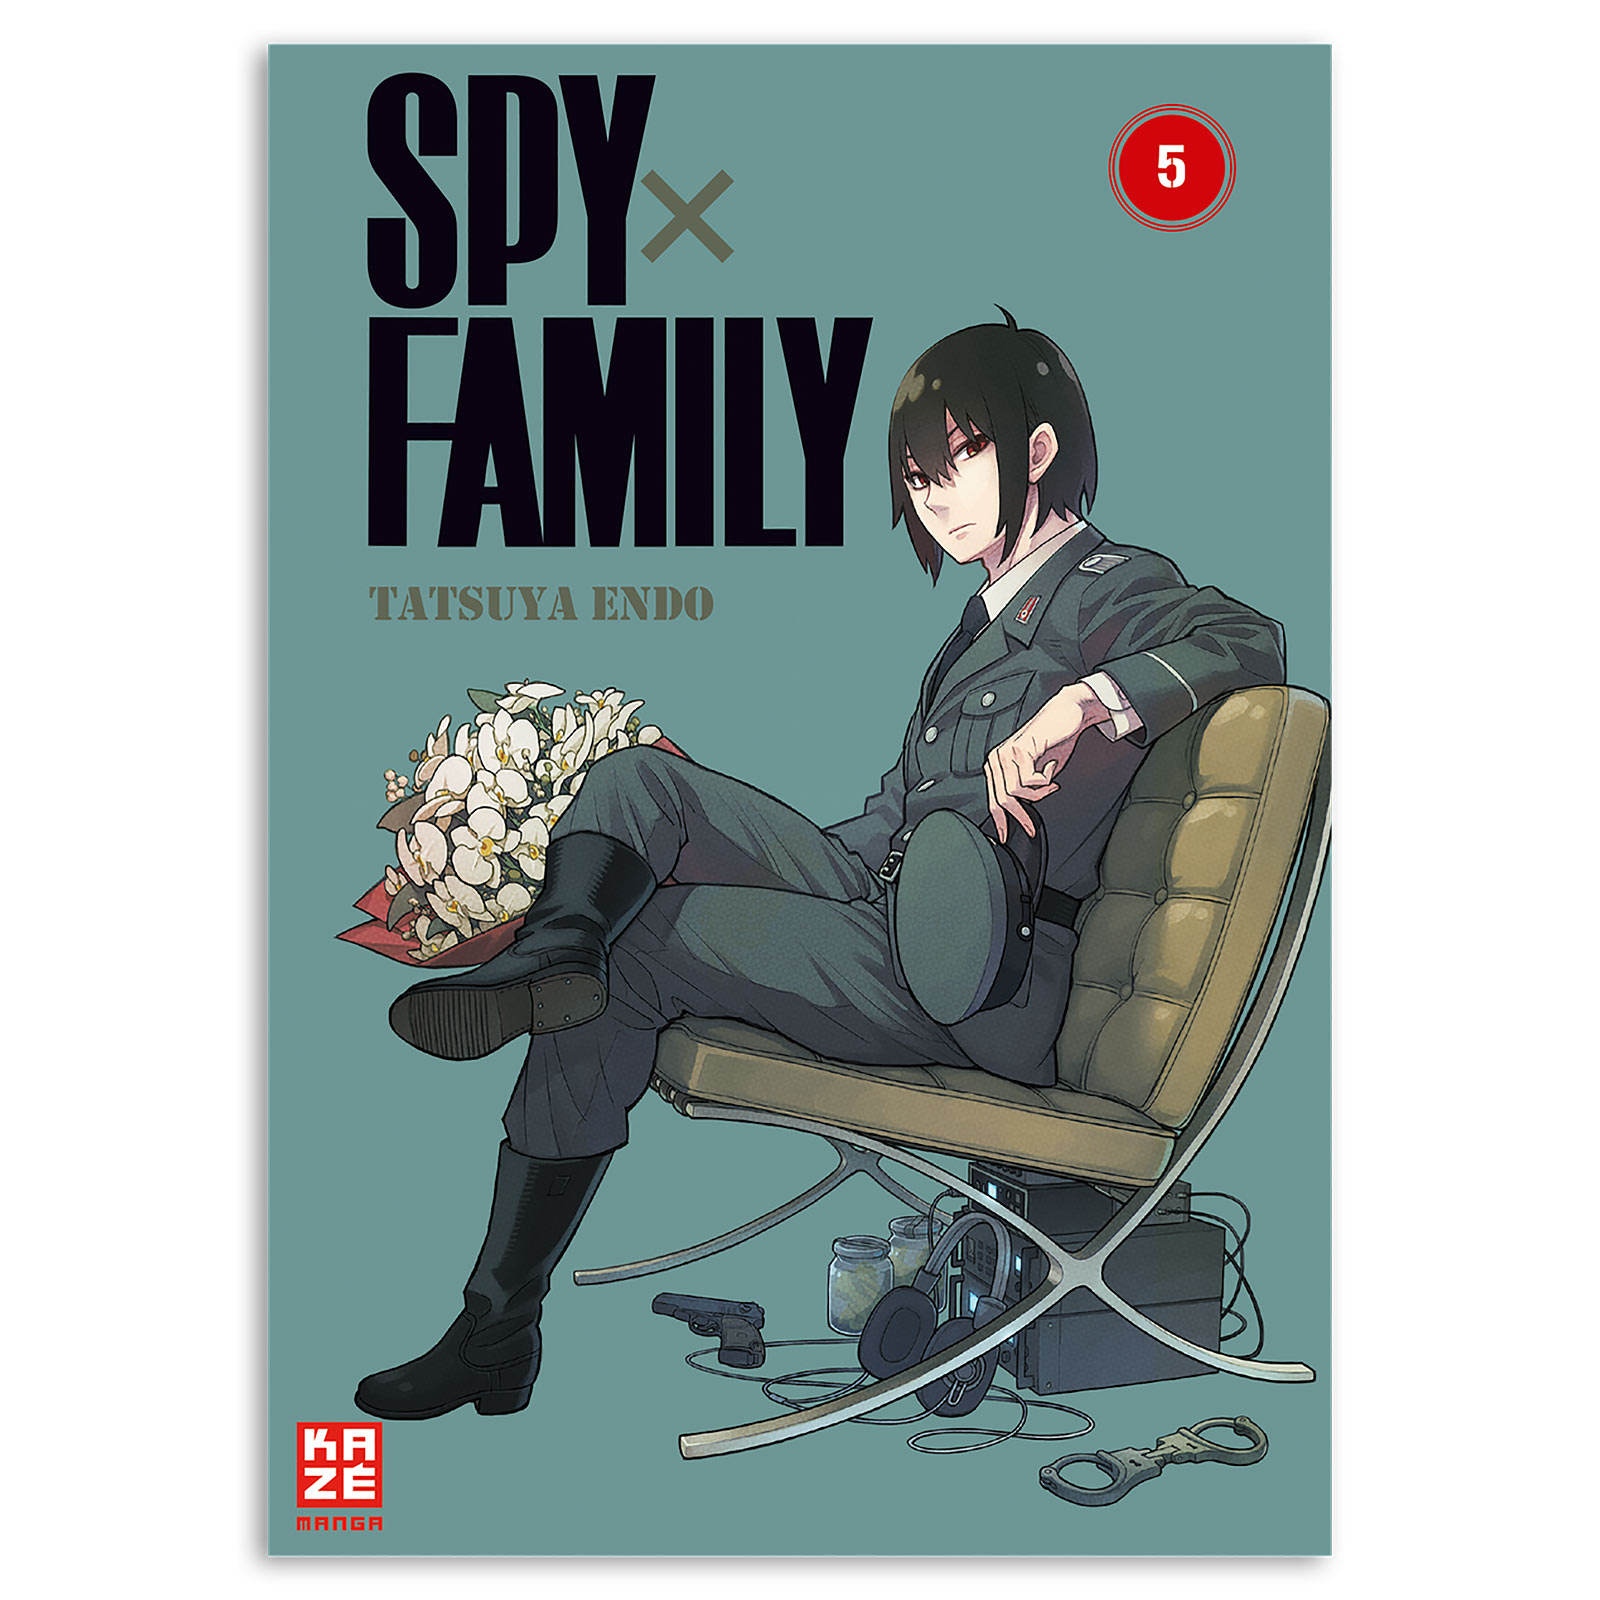 Spy x Family - Volume 5 Paperback